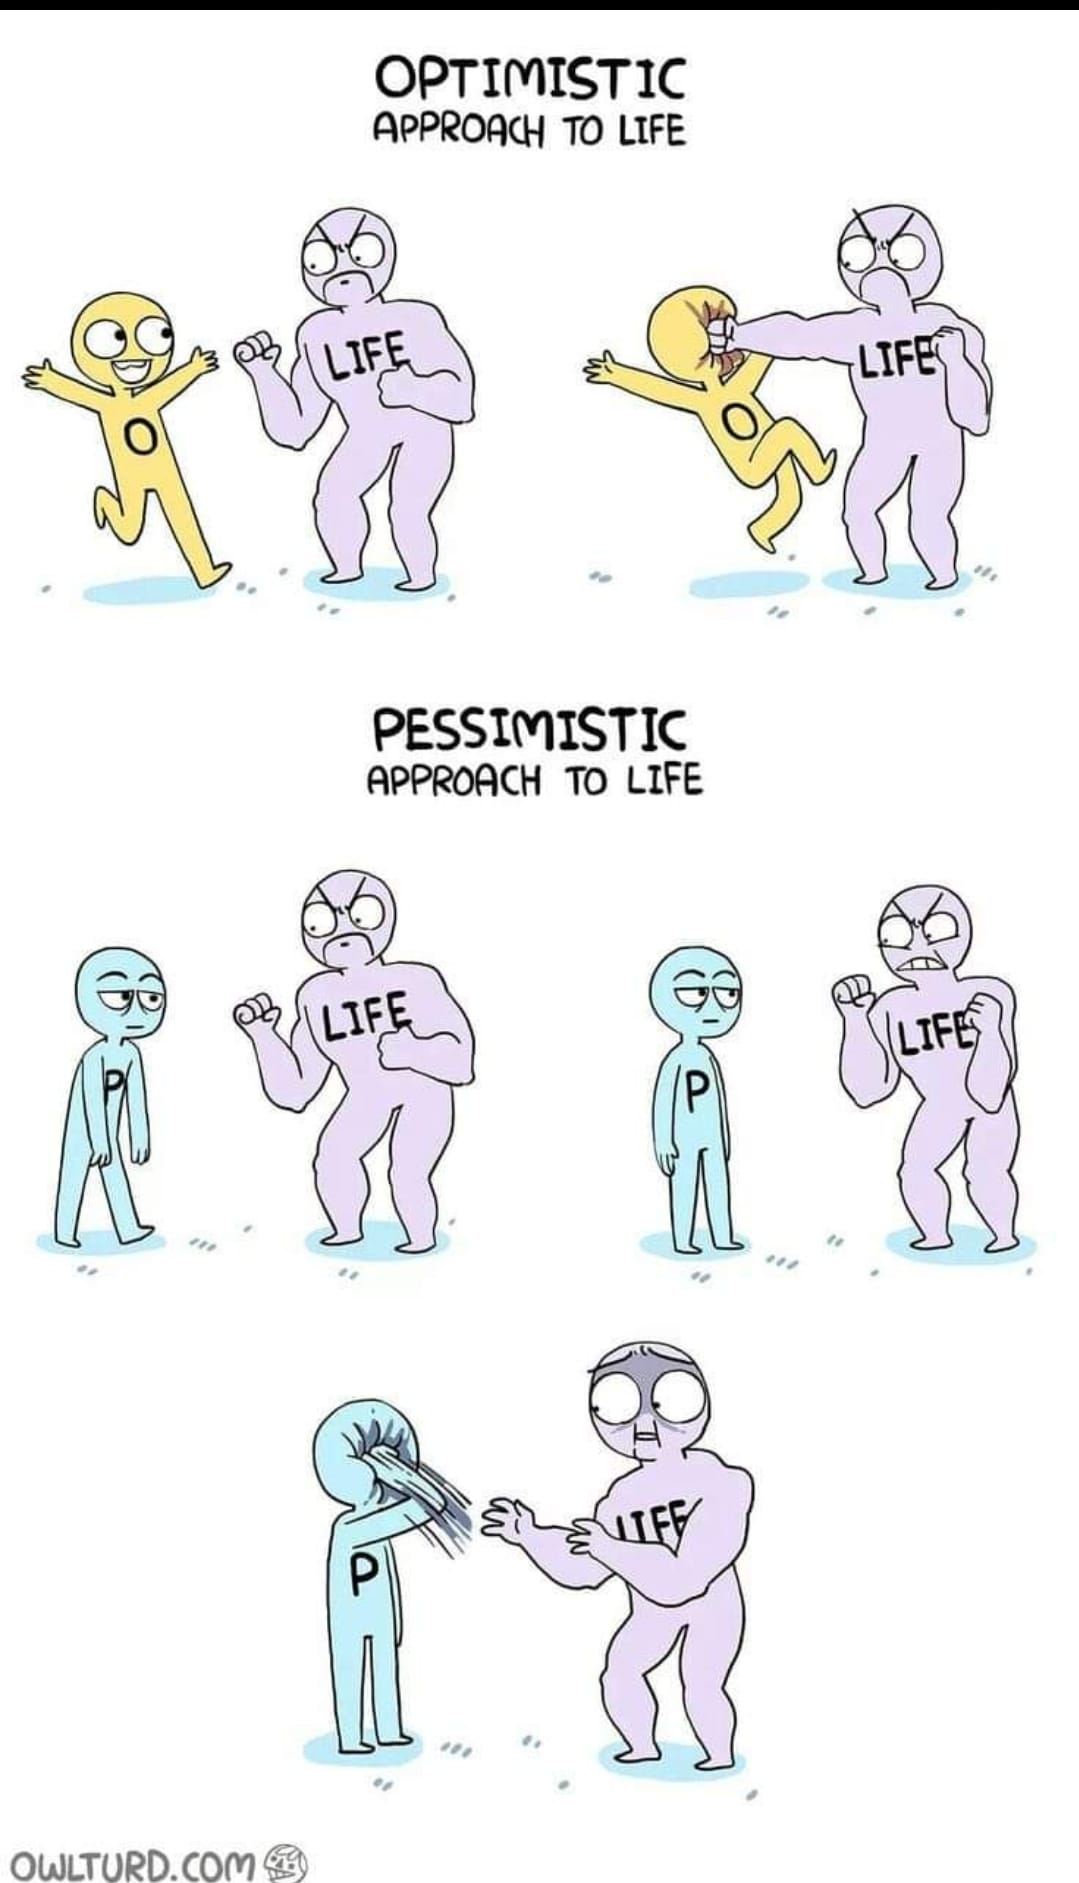 "Optimist" vs. "Pessimist"